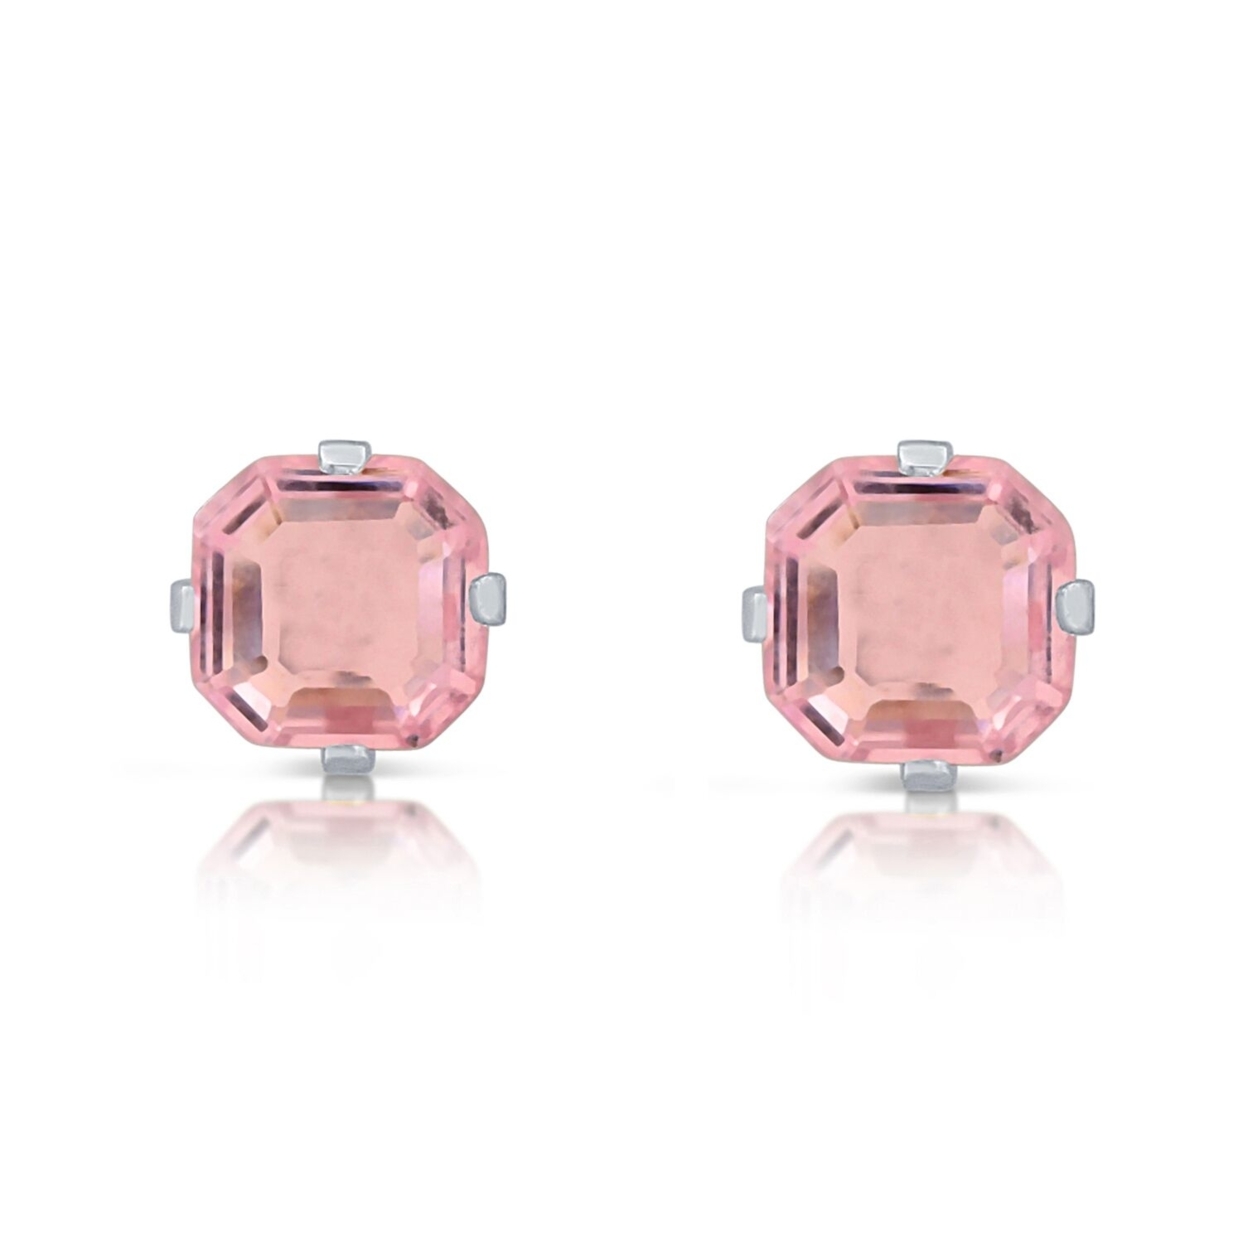 1.3 Carat CZ Pink Sapphire Asscher-Cut Sterling Silver Stud Earrings